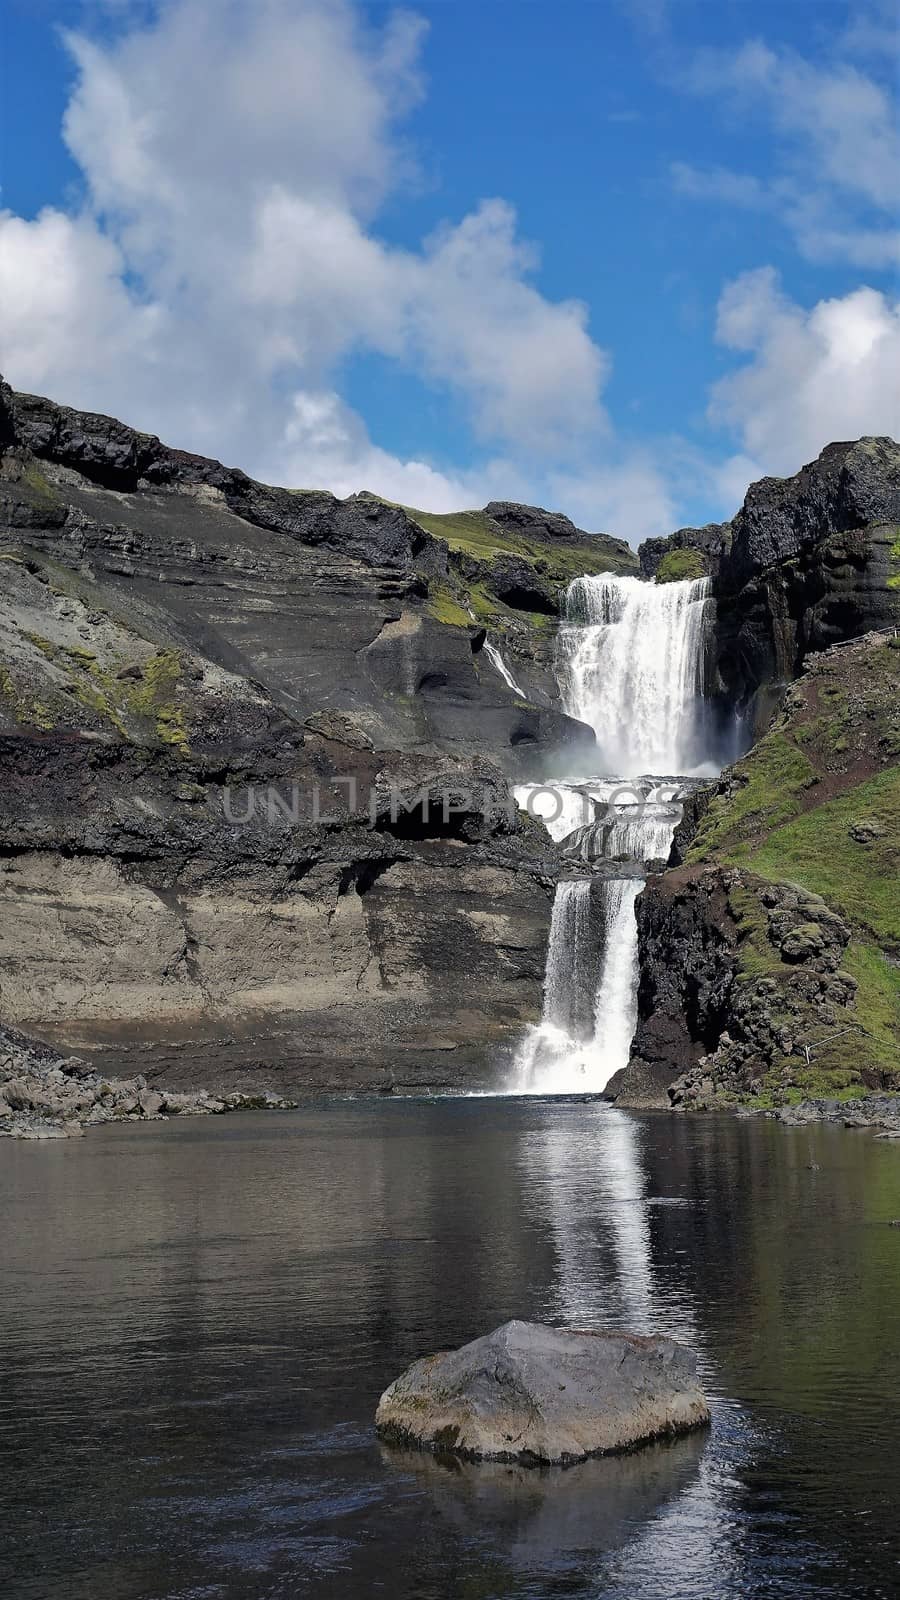 Oferufoss waterfall, Eldgja gorge, Iceland by homocosmicos